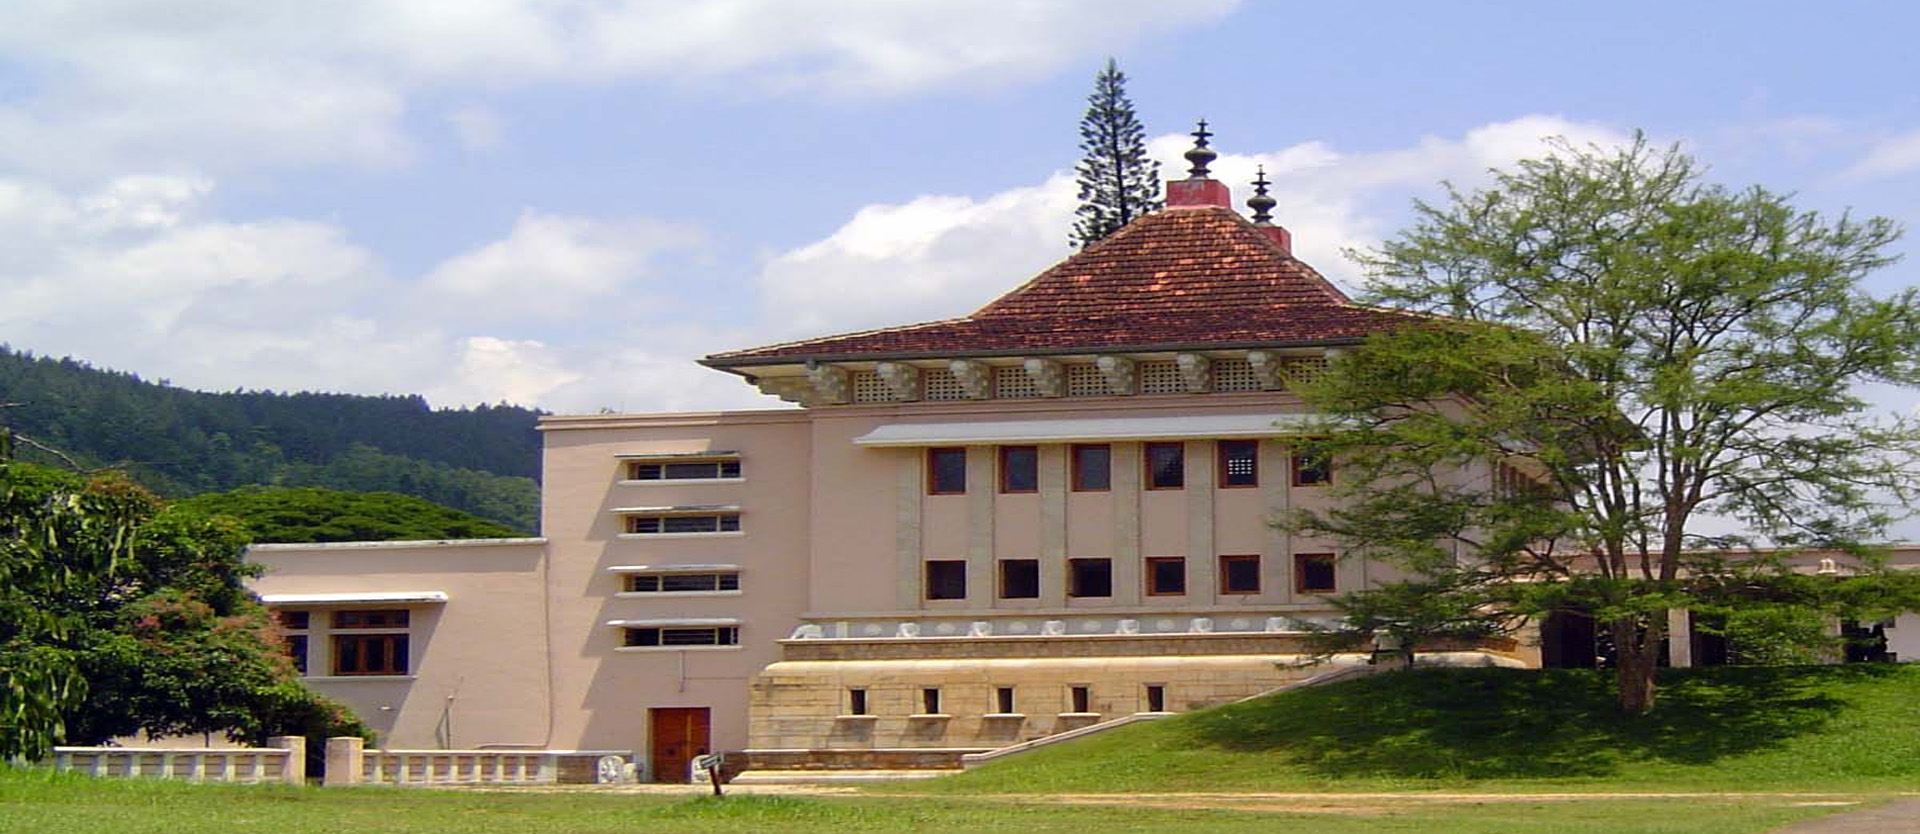 University of Peradeniya